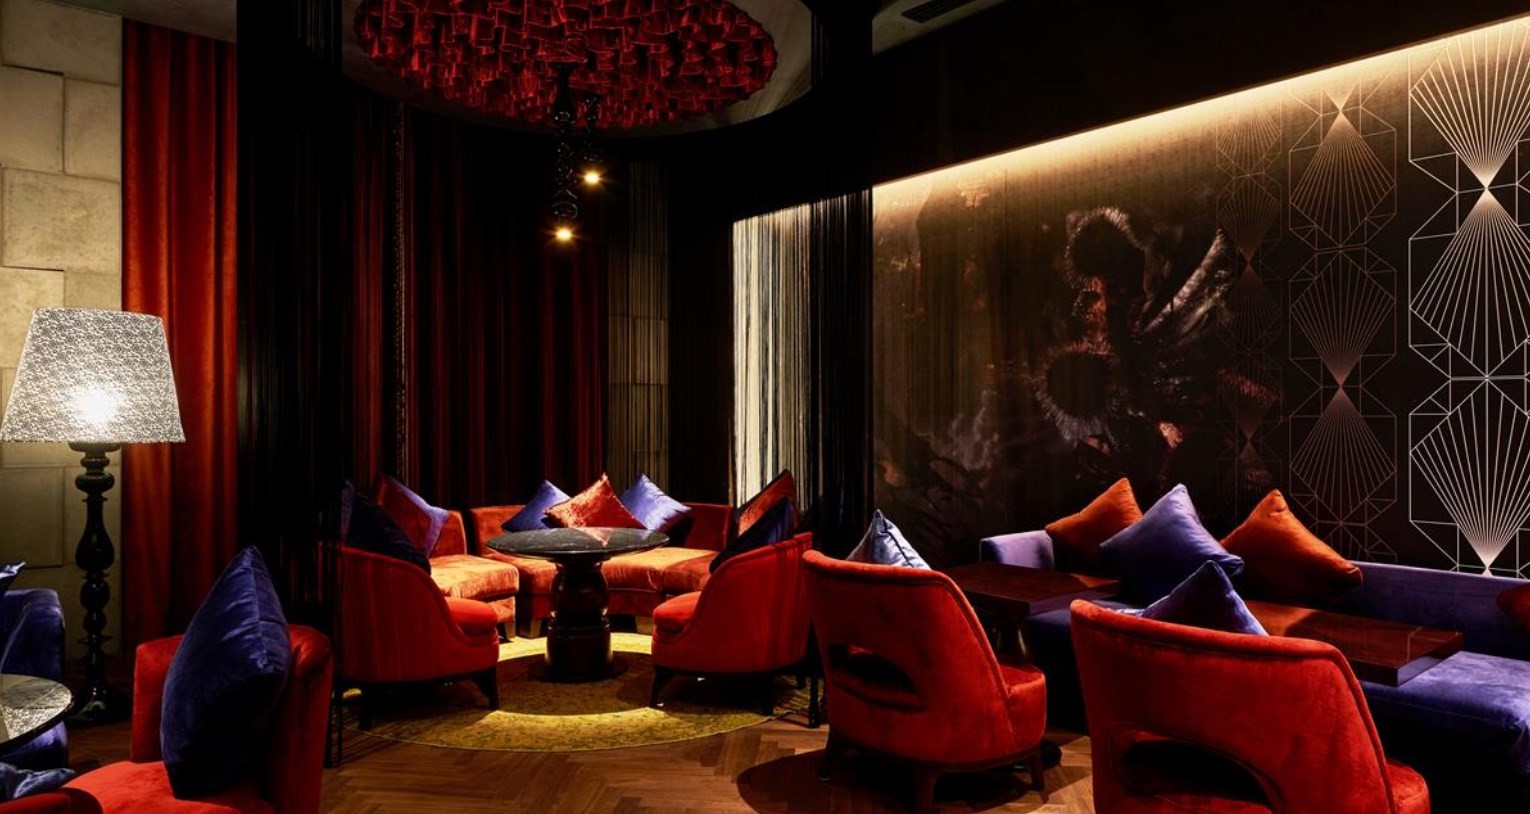 news-main-kempinski-hotels-has-announced-luxury-project-in-makkah-saudi-arabia.1570797868.jpg